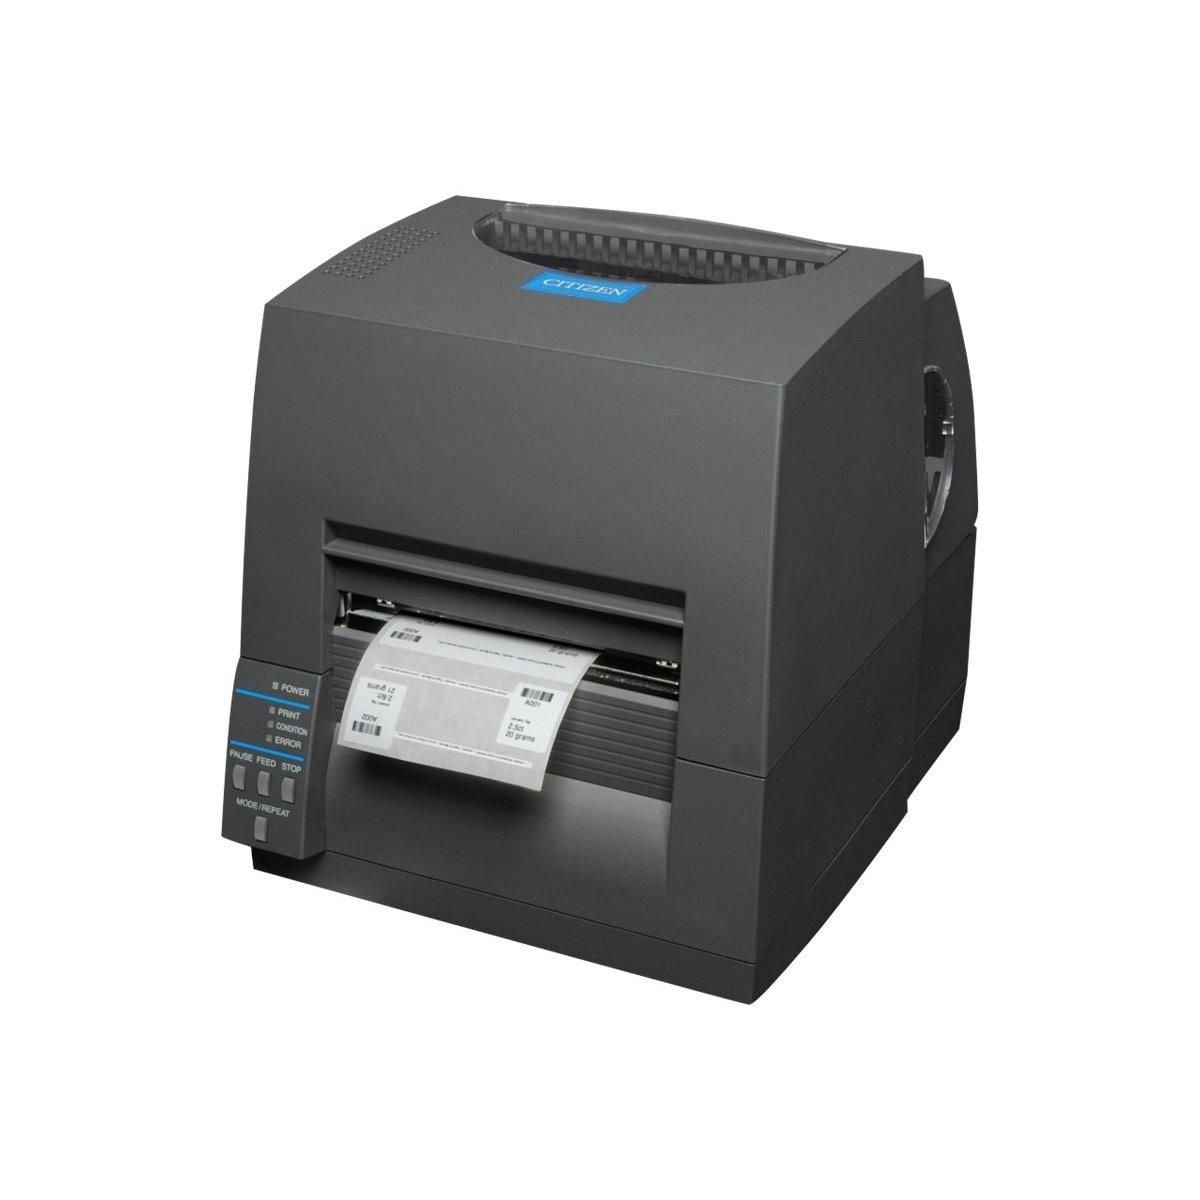 Citizen CL-S631II - Etikettendrucker - TD/TT - Rolle 11.8 cm - 300 dpi - bis zu 100 mm/Sek. - Label Printer - Label Printer